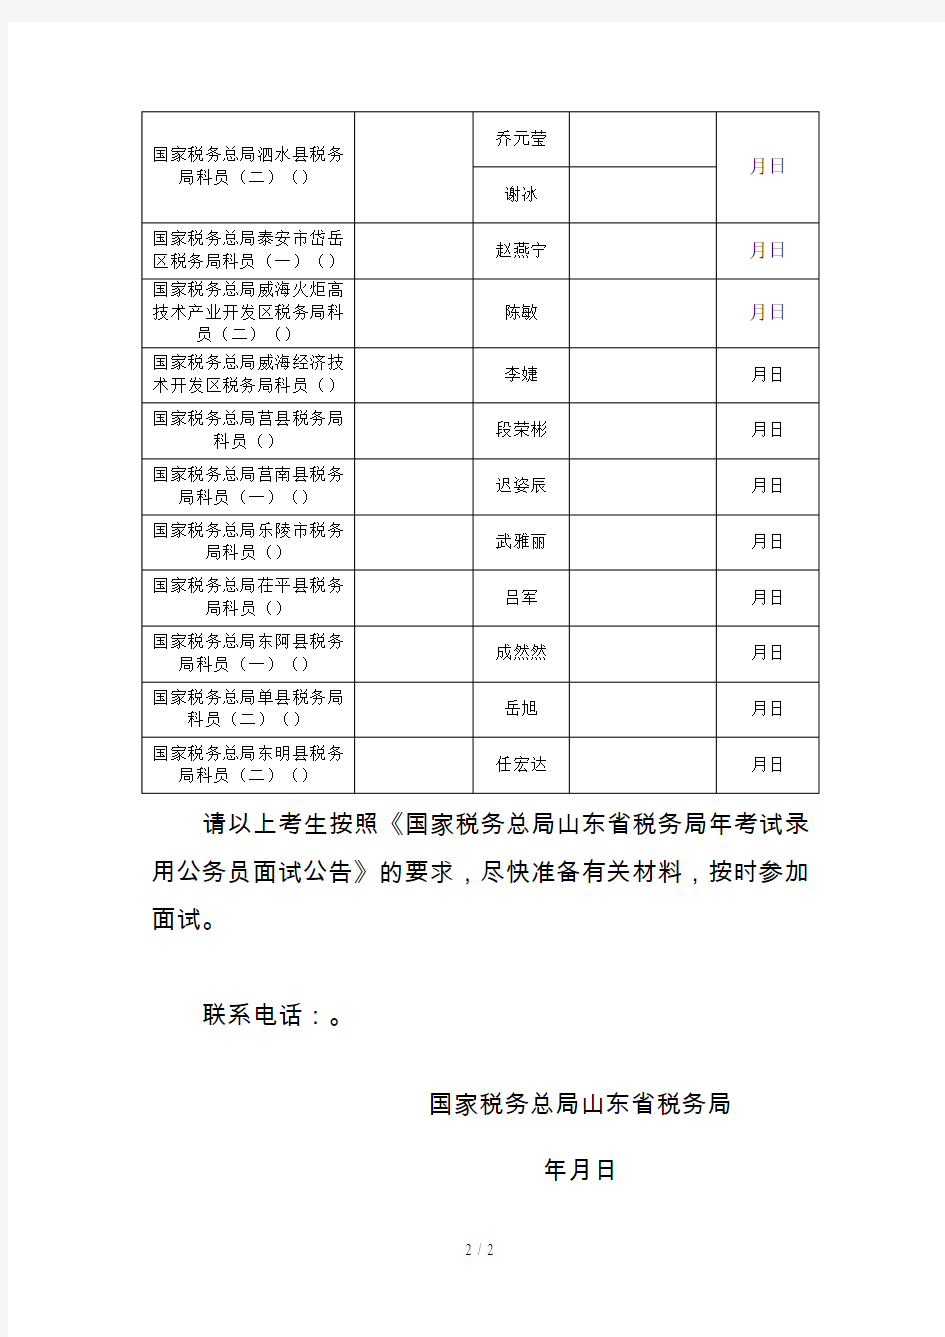 国家税务总局山东省税务局2019年考试录用